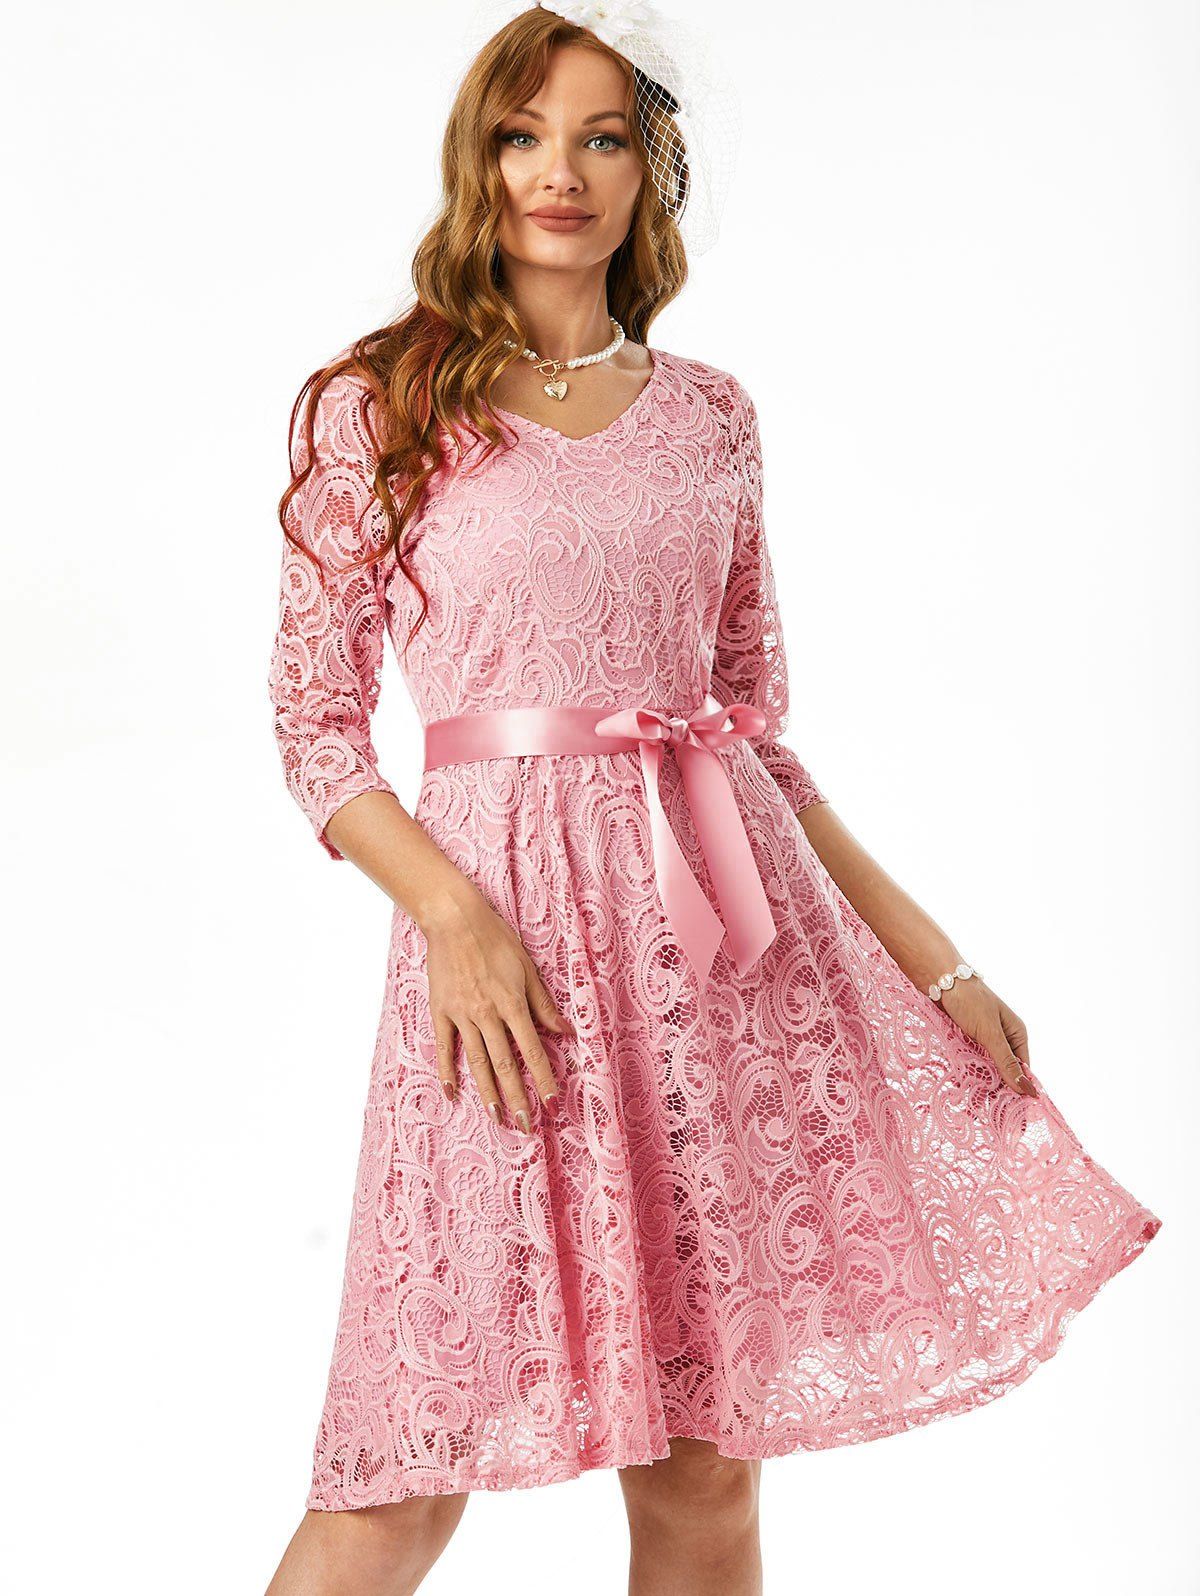 Lace Overlay Belted V Neck Dress - LIGHT PINK L